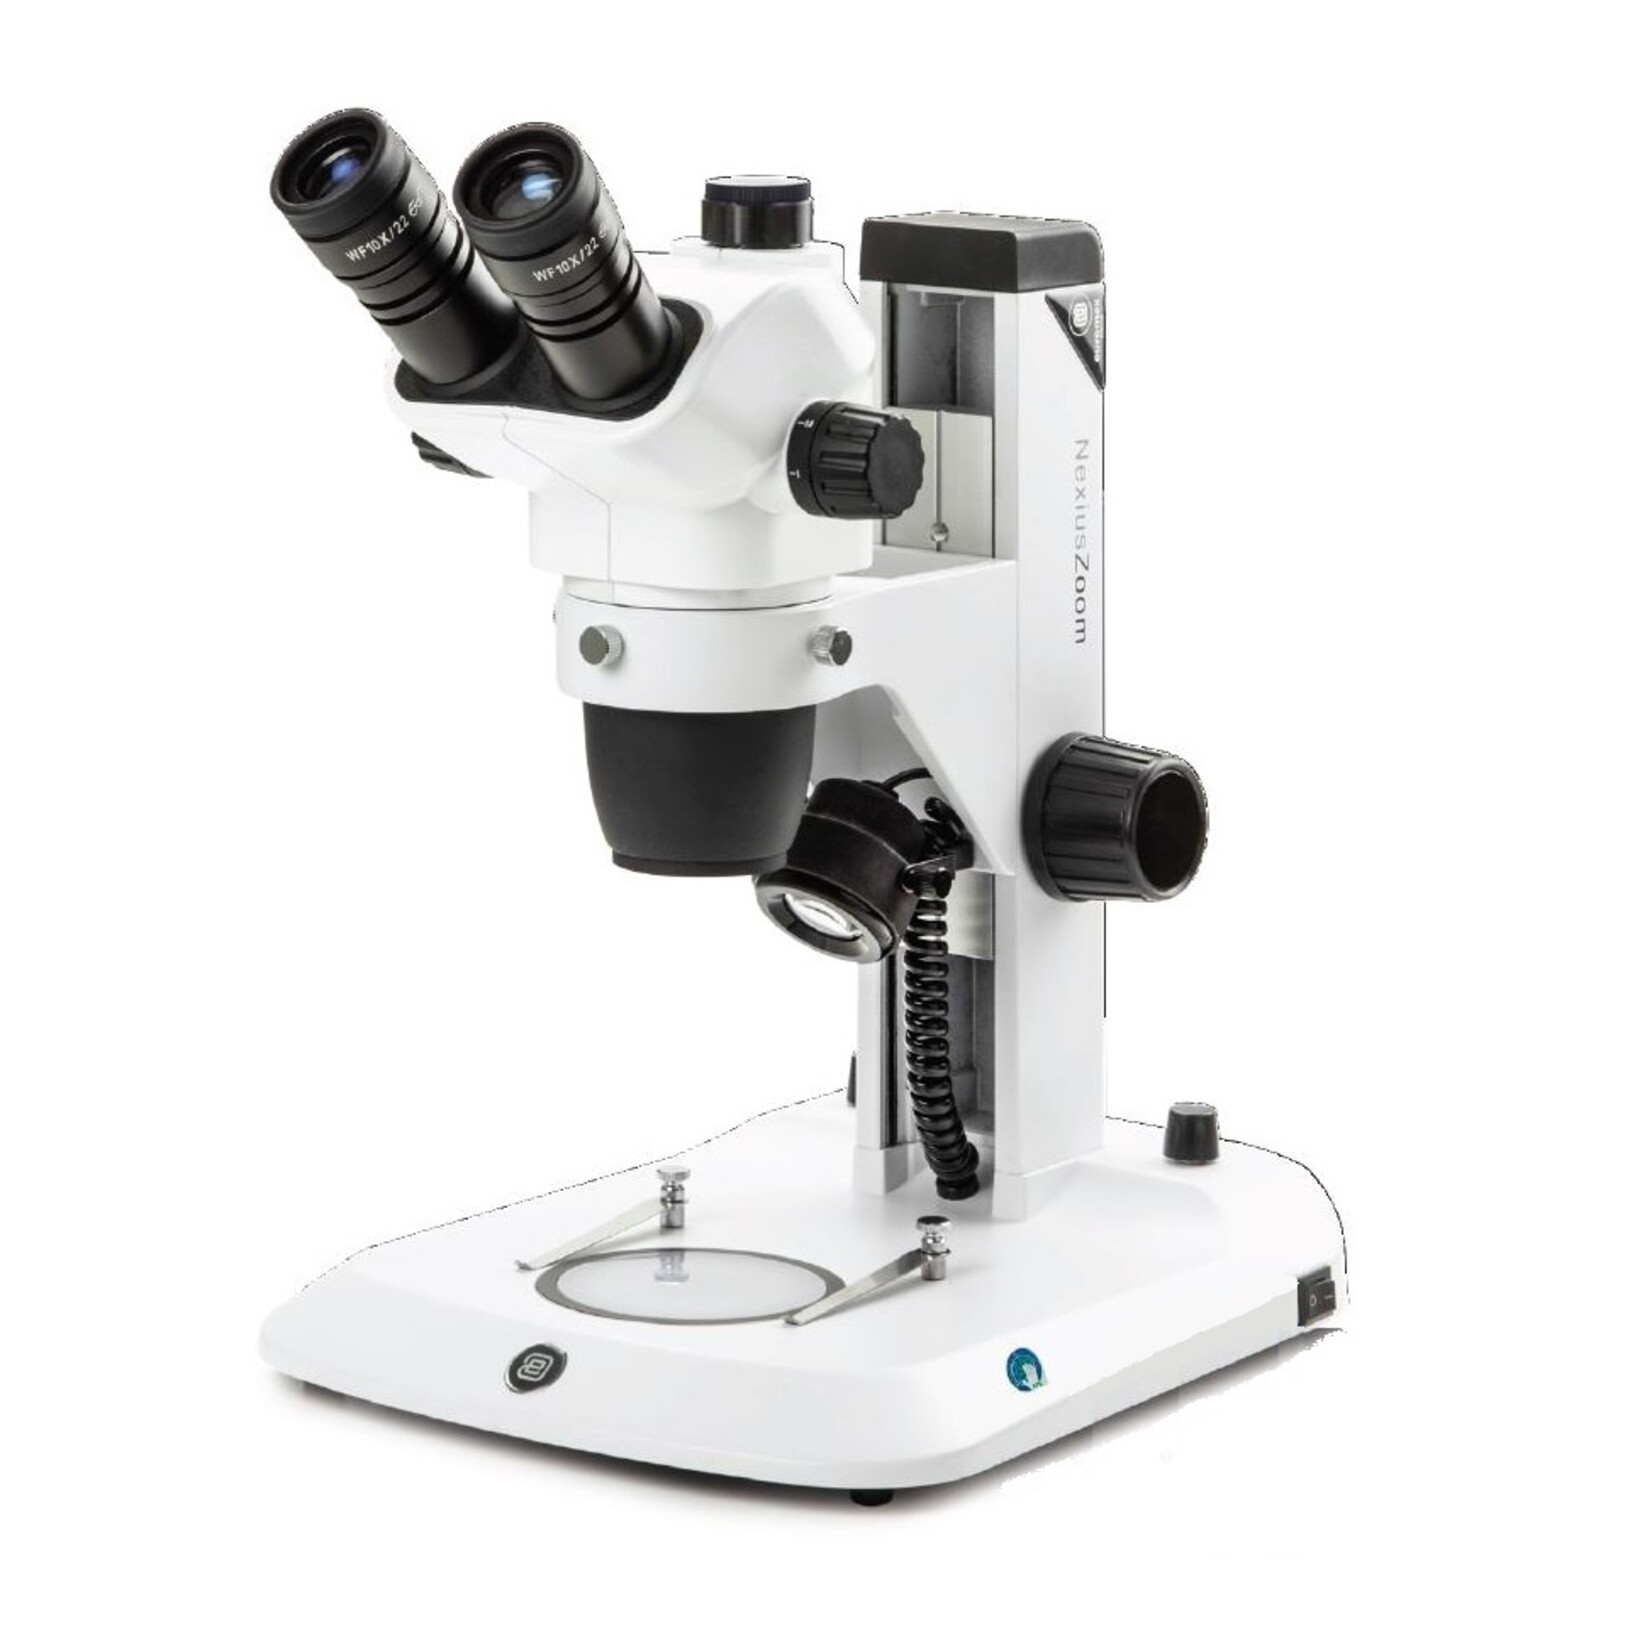 Trójokularowy mikroskop stereoskopowy NexiusZoom EVO, obiektyw o powiększeniu od 0,65x do 5,5x